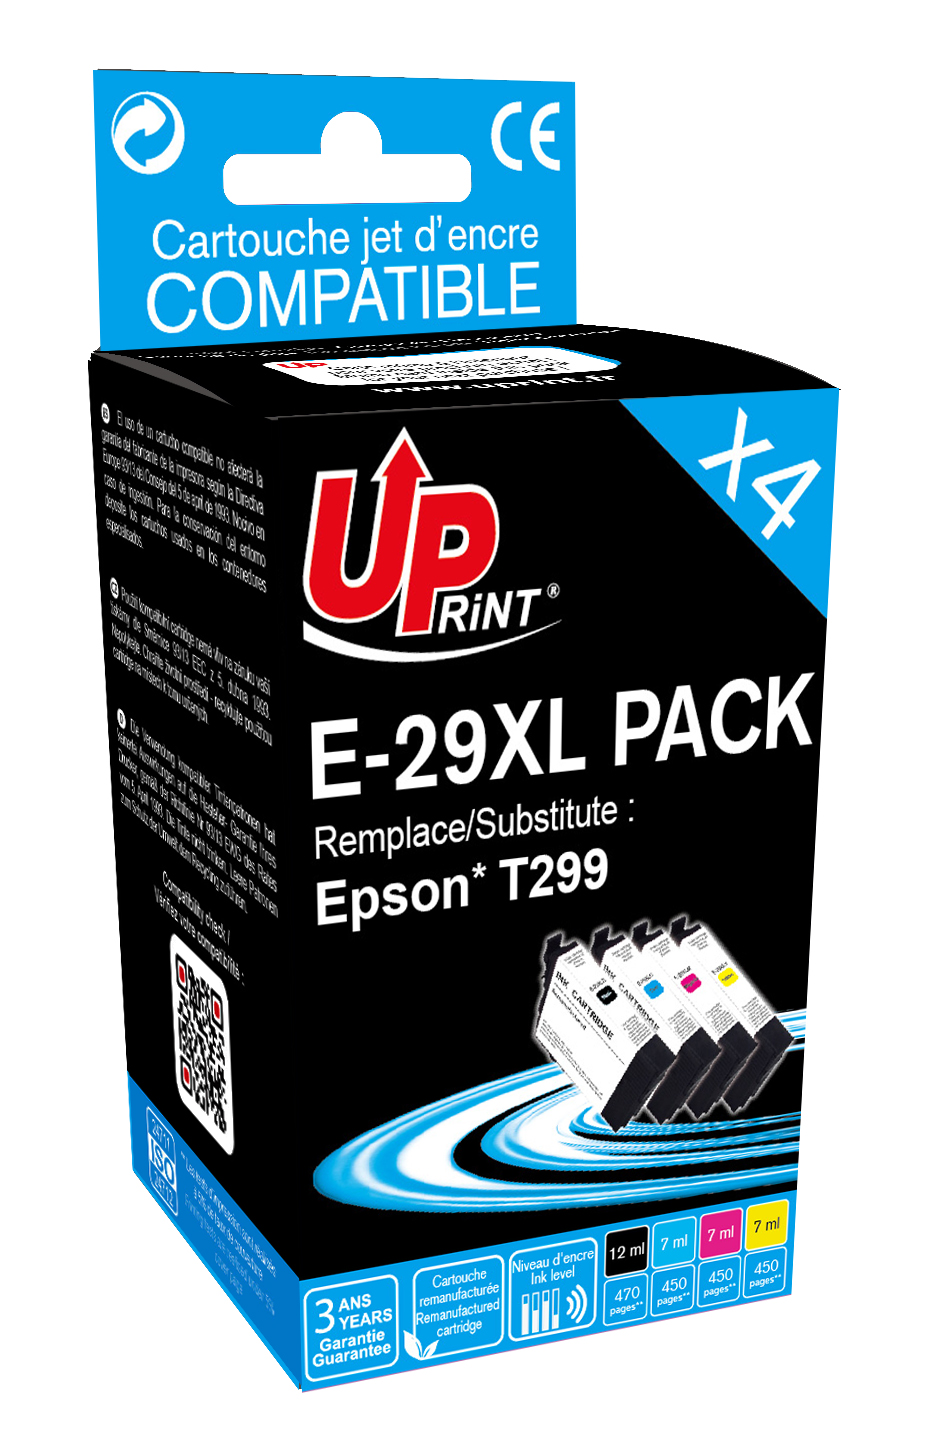 Cartouche encre compatible pour Epson XP-345 XP-432, XP-435 XP-442 XP-445